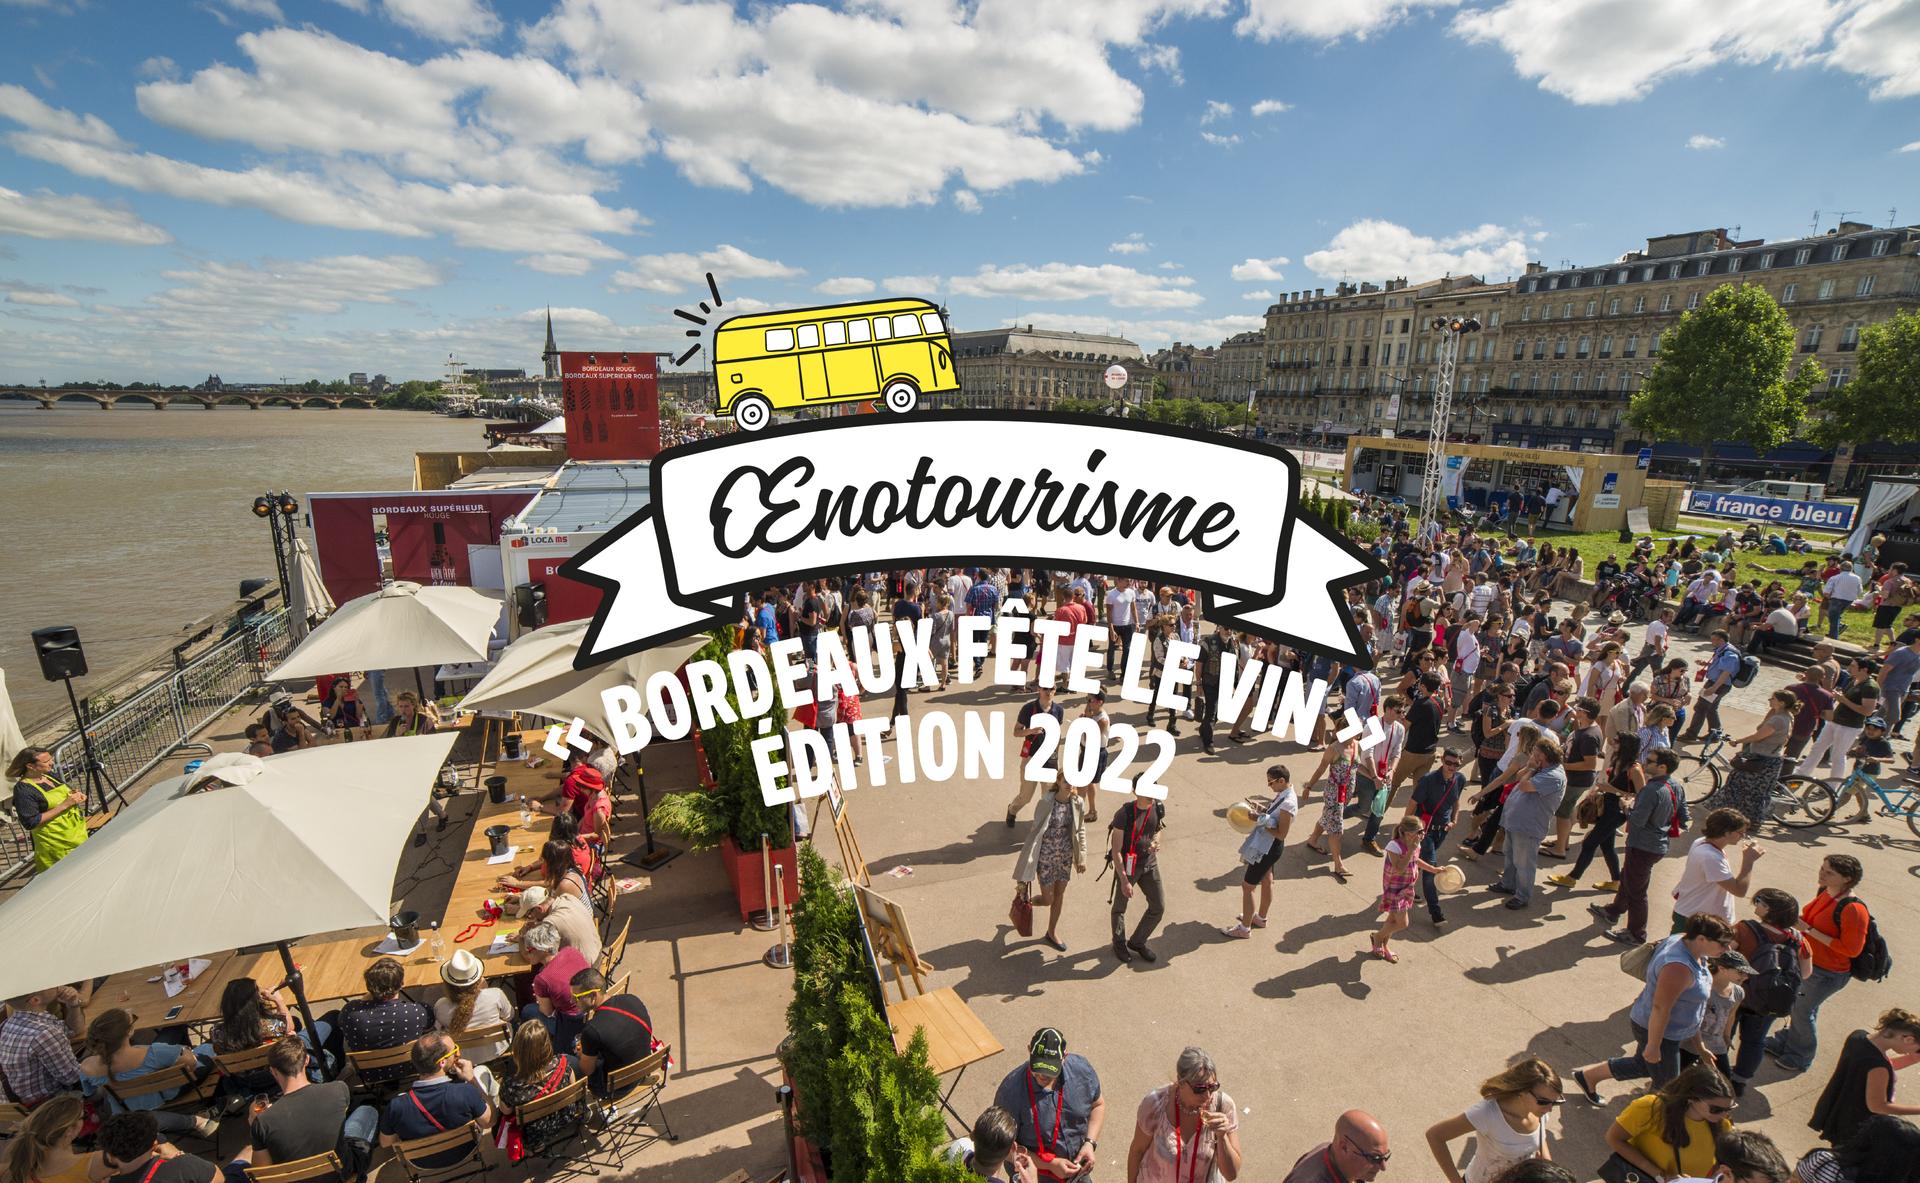 « Bordeaux fête le vin » fait son grand retour en 2022